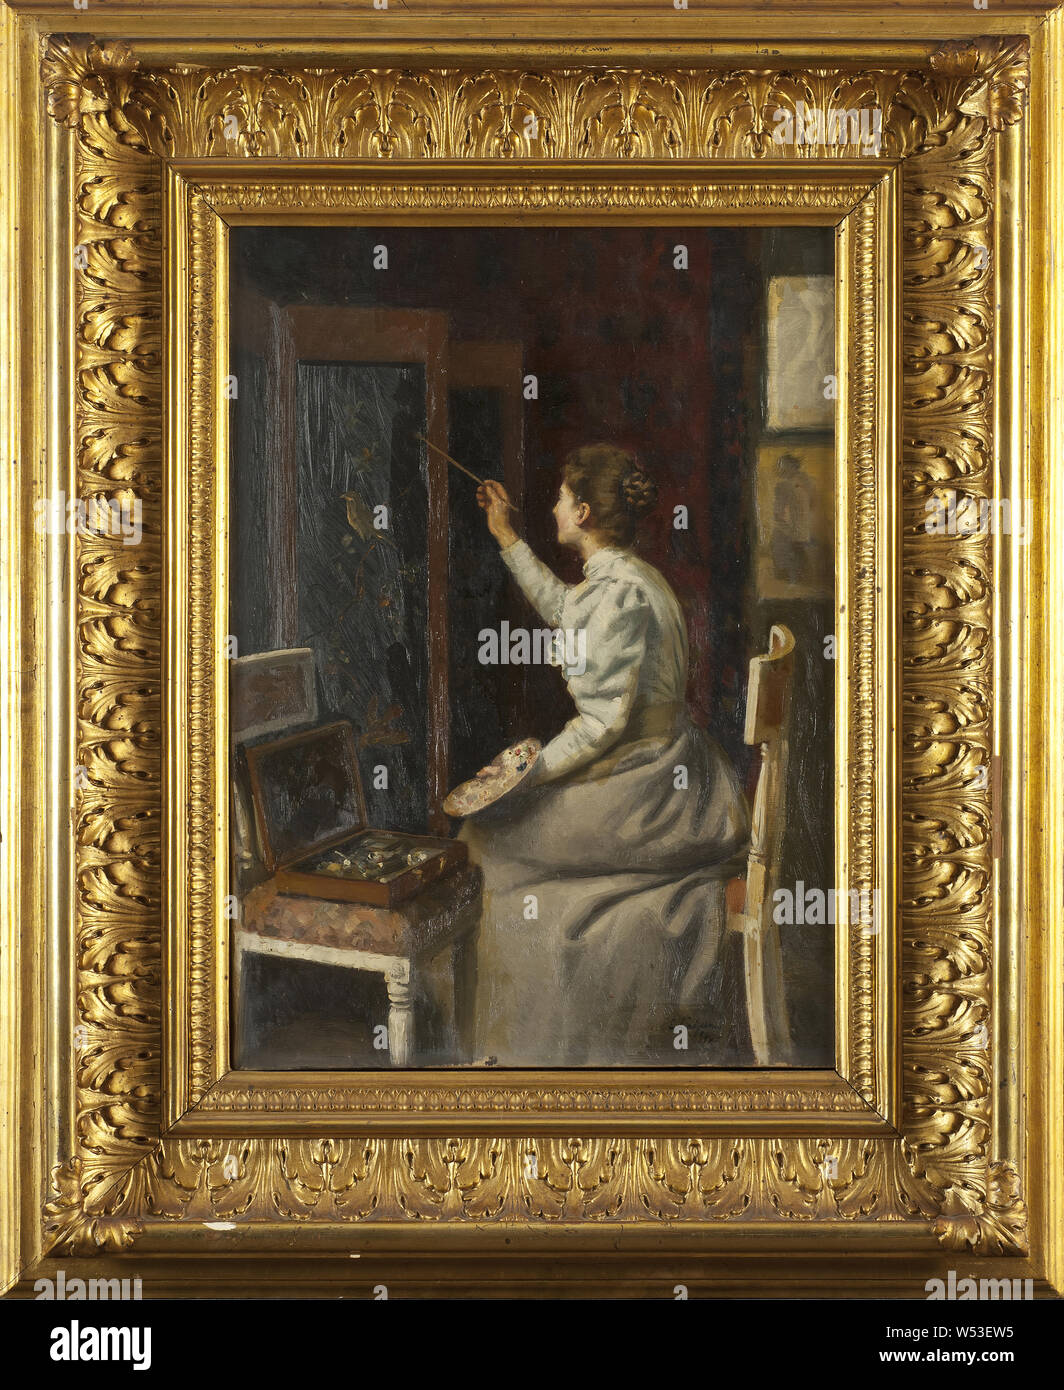 Emanuel Lindgren, im Studio, Malerei, 1894, Öl auf Leinwand, Höhe 56 cm (22 Zoll), Breite 40 cm (15,7 Zoll), Signiert E. Lindgren 94. Stockfoto